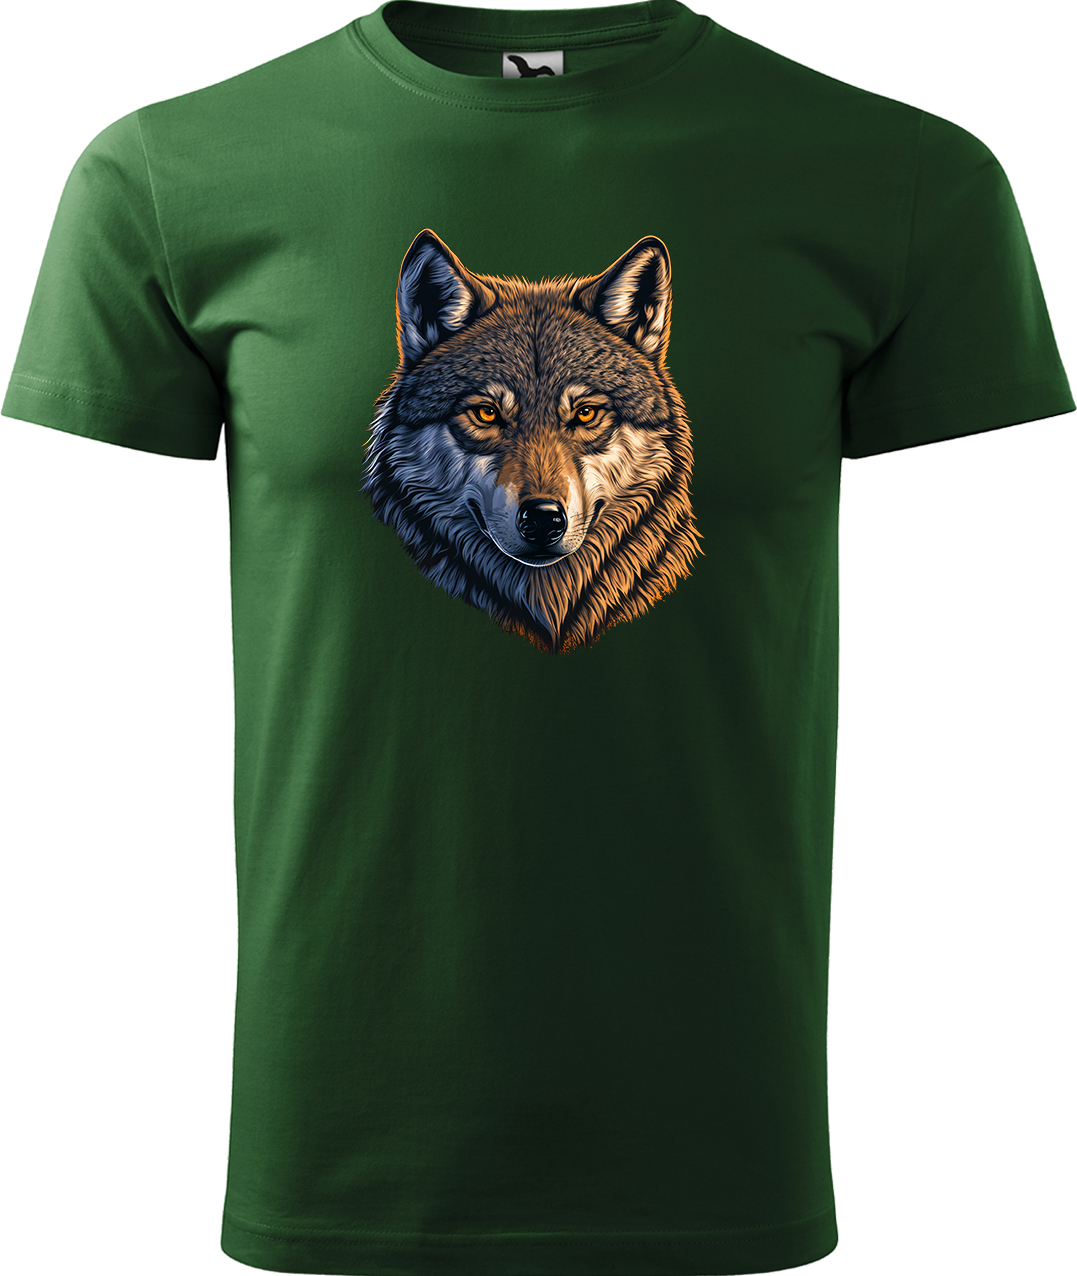 Pánské tričko s vlkem - Hlava vlka Velikost: 3XL, Barva: Lahvově zelená (06), Střih: pánský